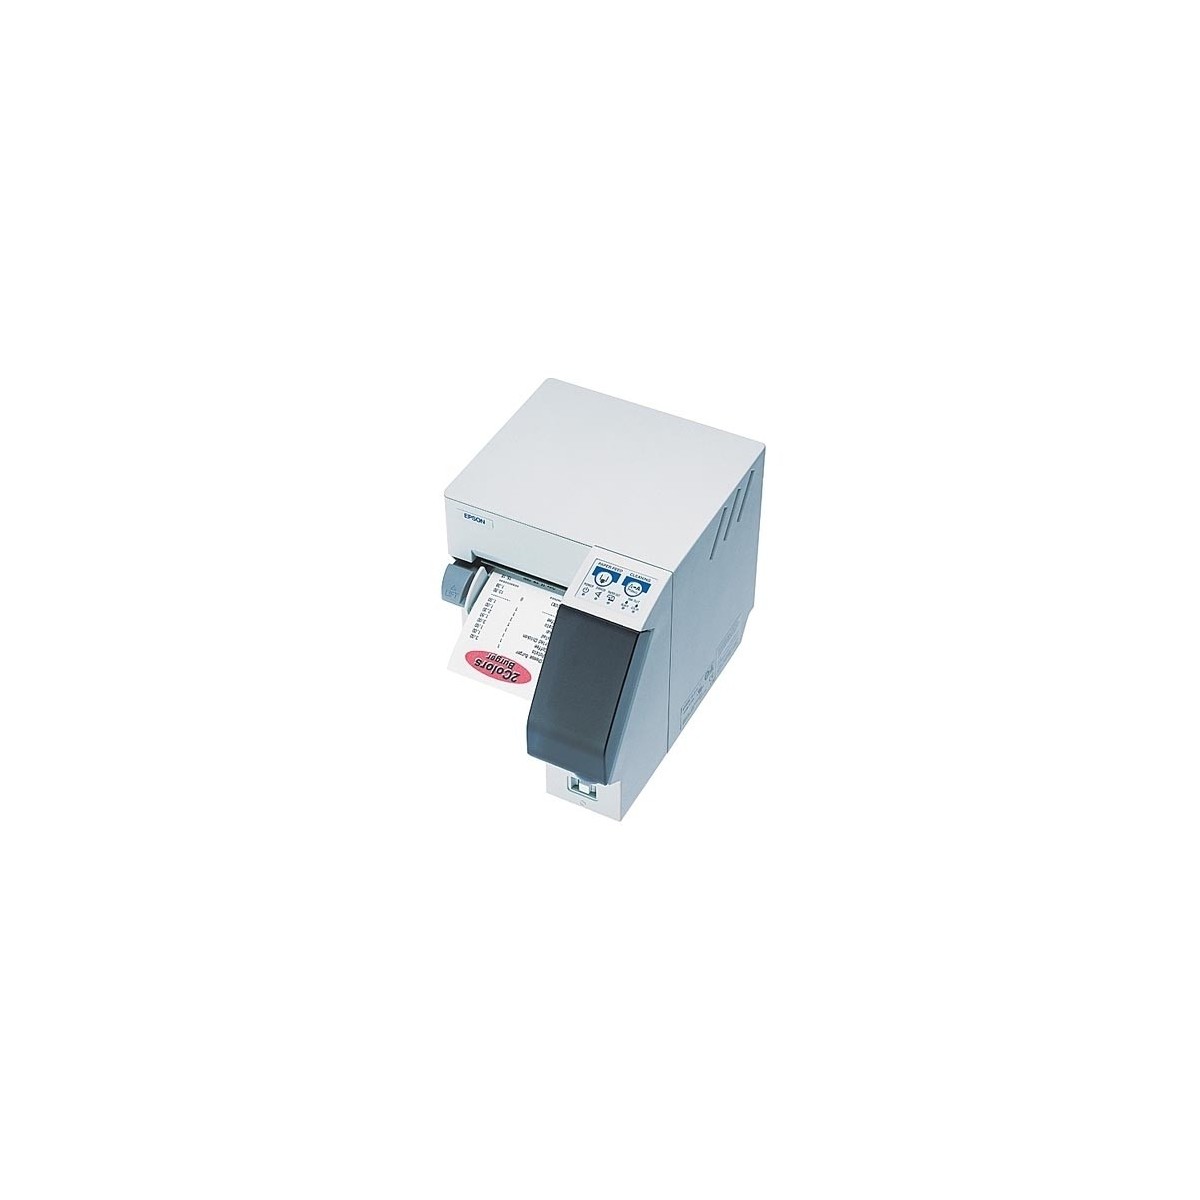 Epson TM-J2100P Belegdrucker - Tintenstrahl - Rolle TM-J2100-011 Ink jet printer serial - Printer - Thermal Transfer